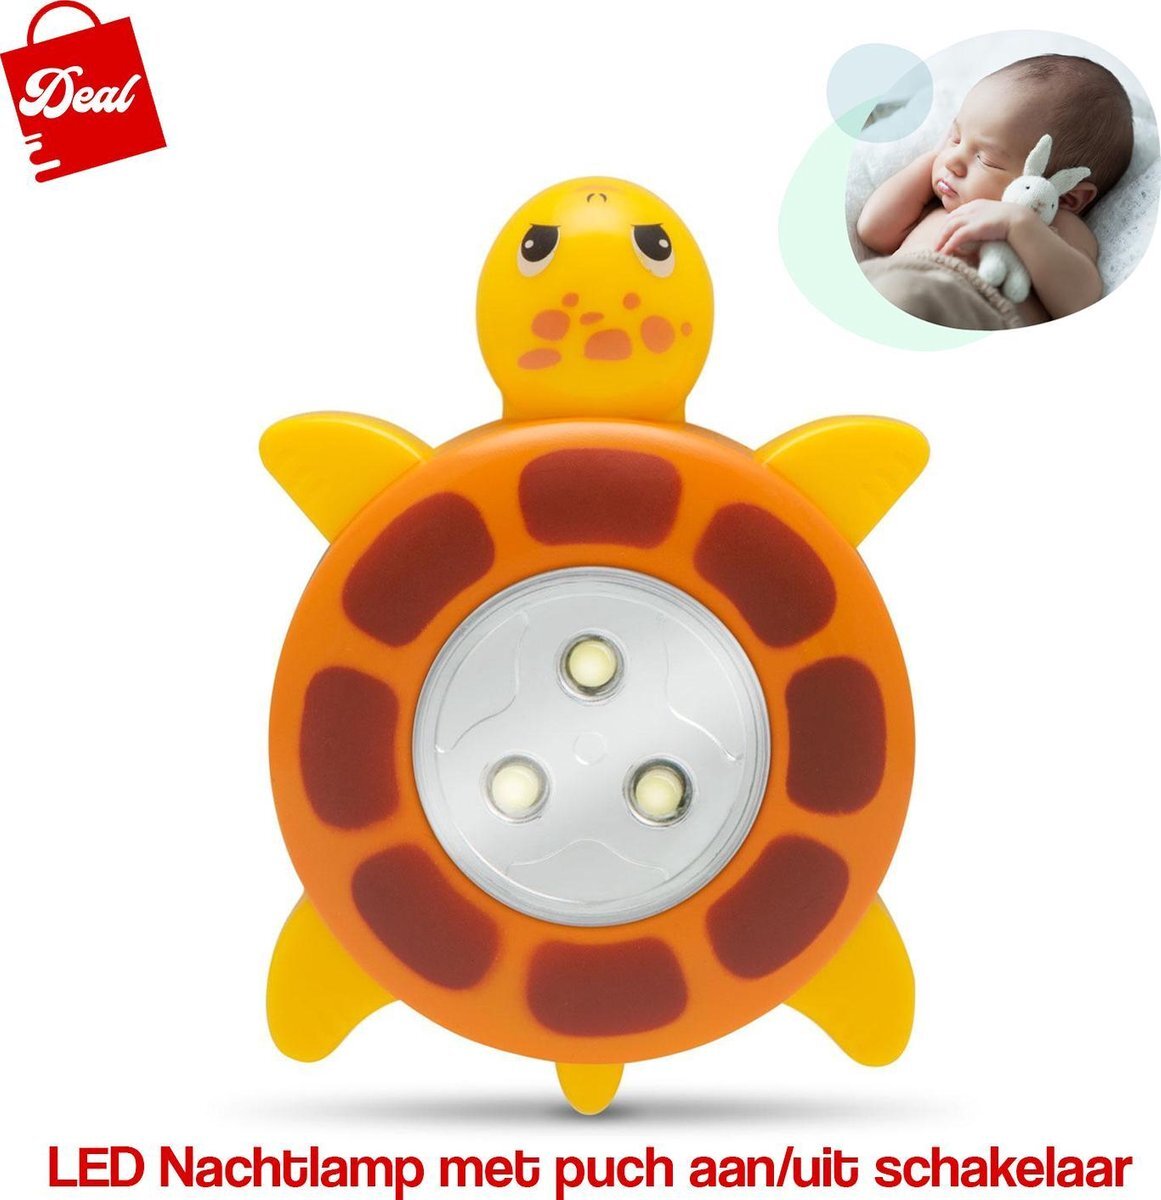 D.E.A.L. LED Nachtlamp Met Push Aan & Uit Schakelaar - Schildpadje